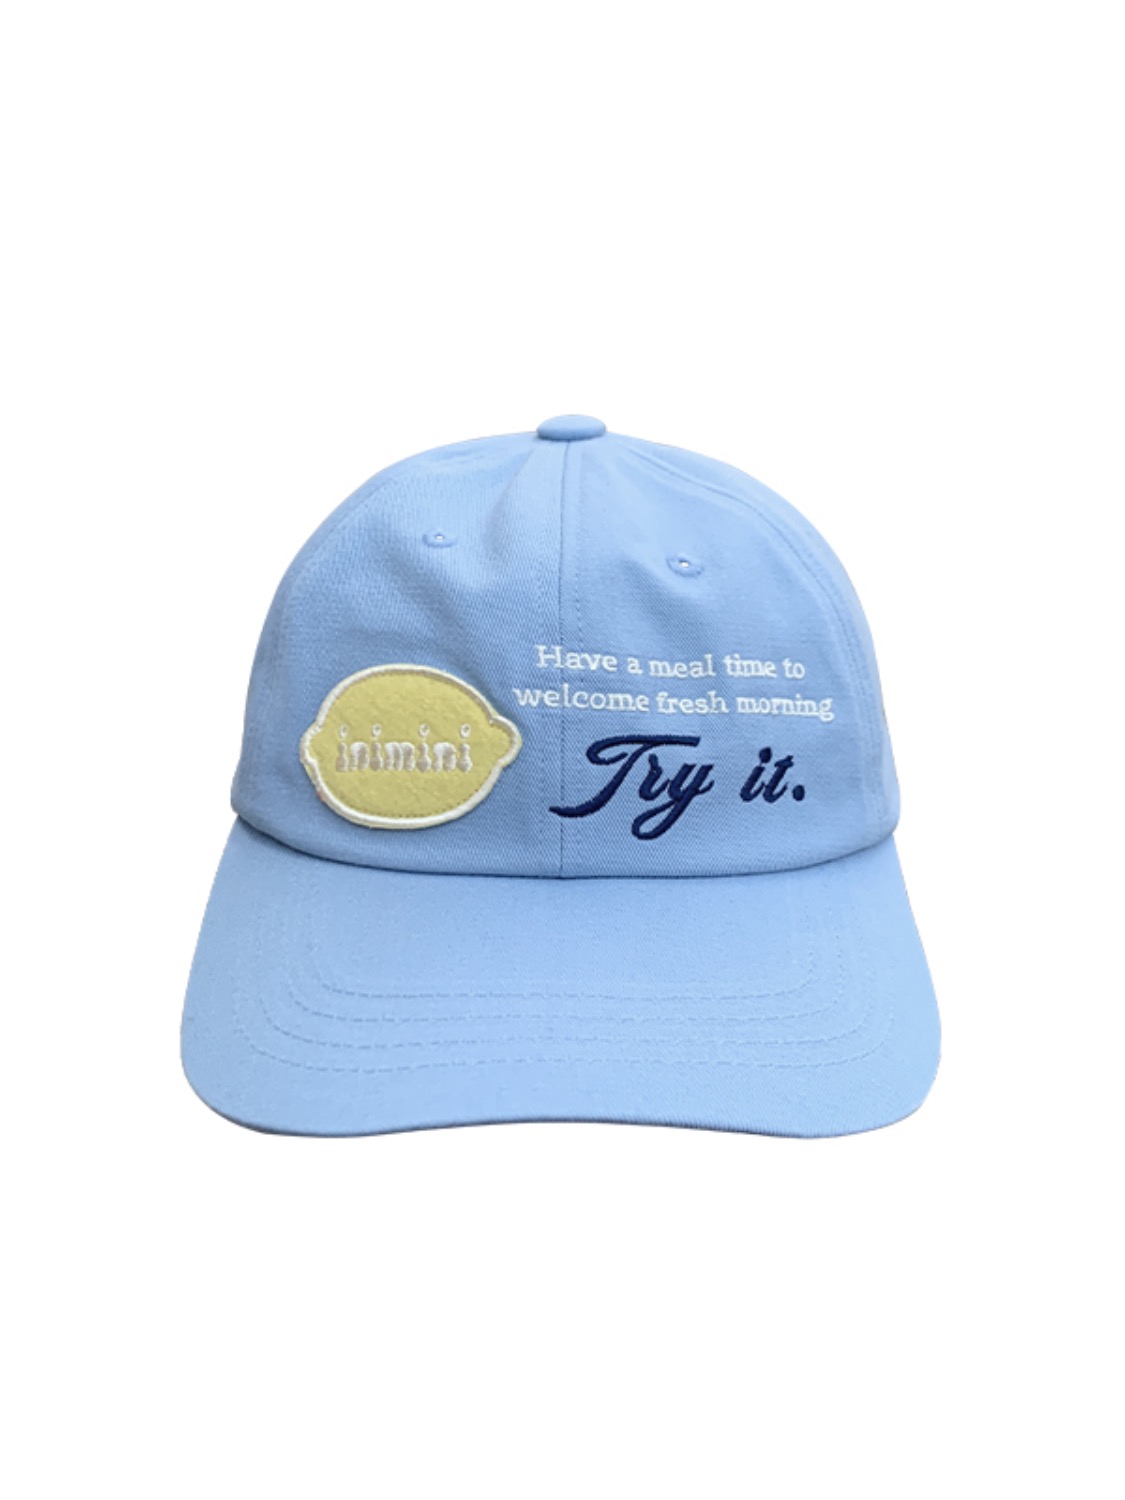 try it cap (sky blue)